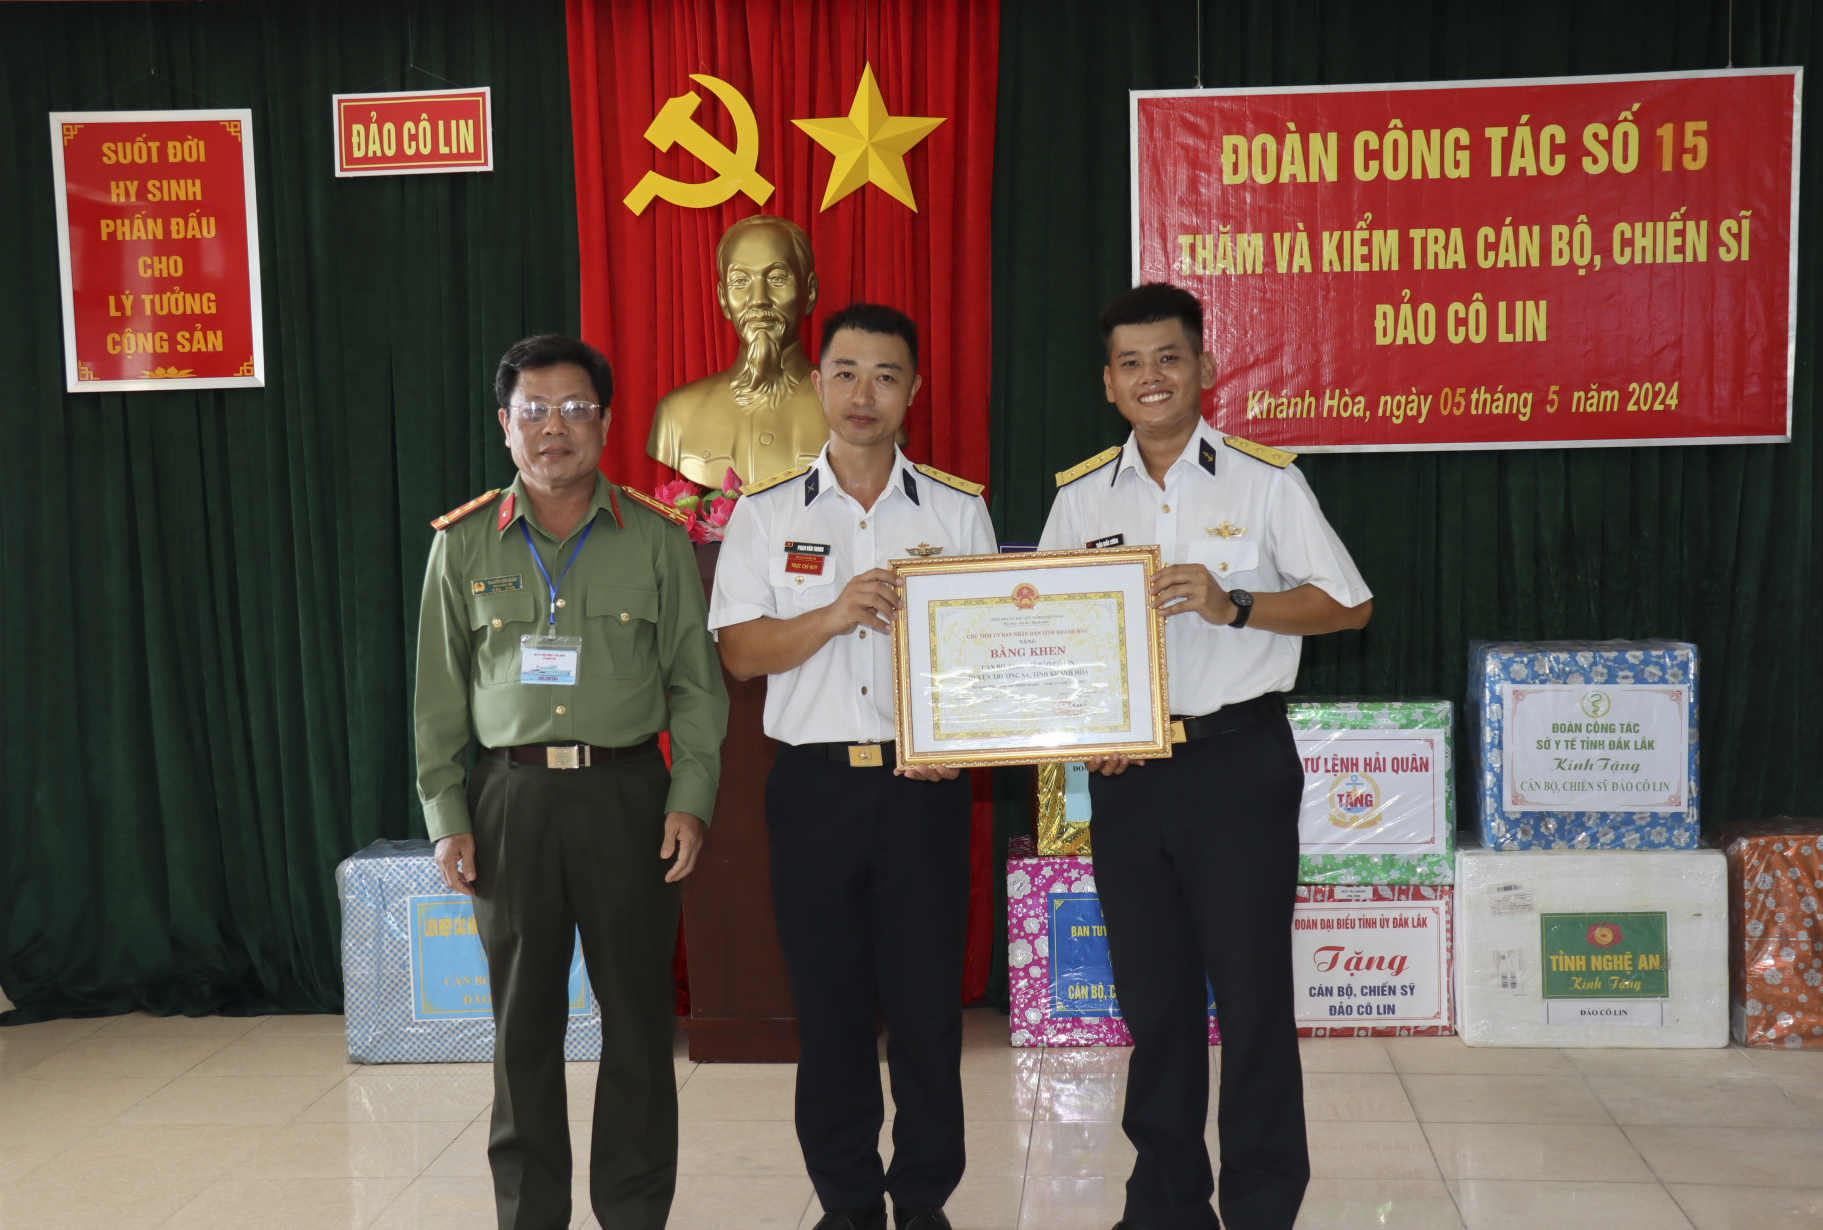 Ông Nguyễn Văn Ngàn - Phó Giám đốc Công an tỉnh Khánh Hòa trao bằng khen của UBND tỉnh cho cán bộ, chiến sĩ đảo Cô Lin.